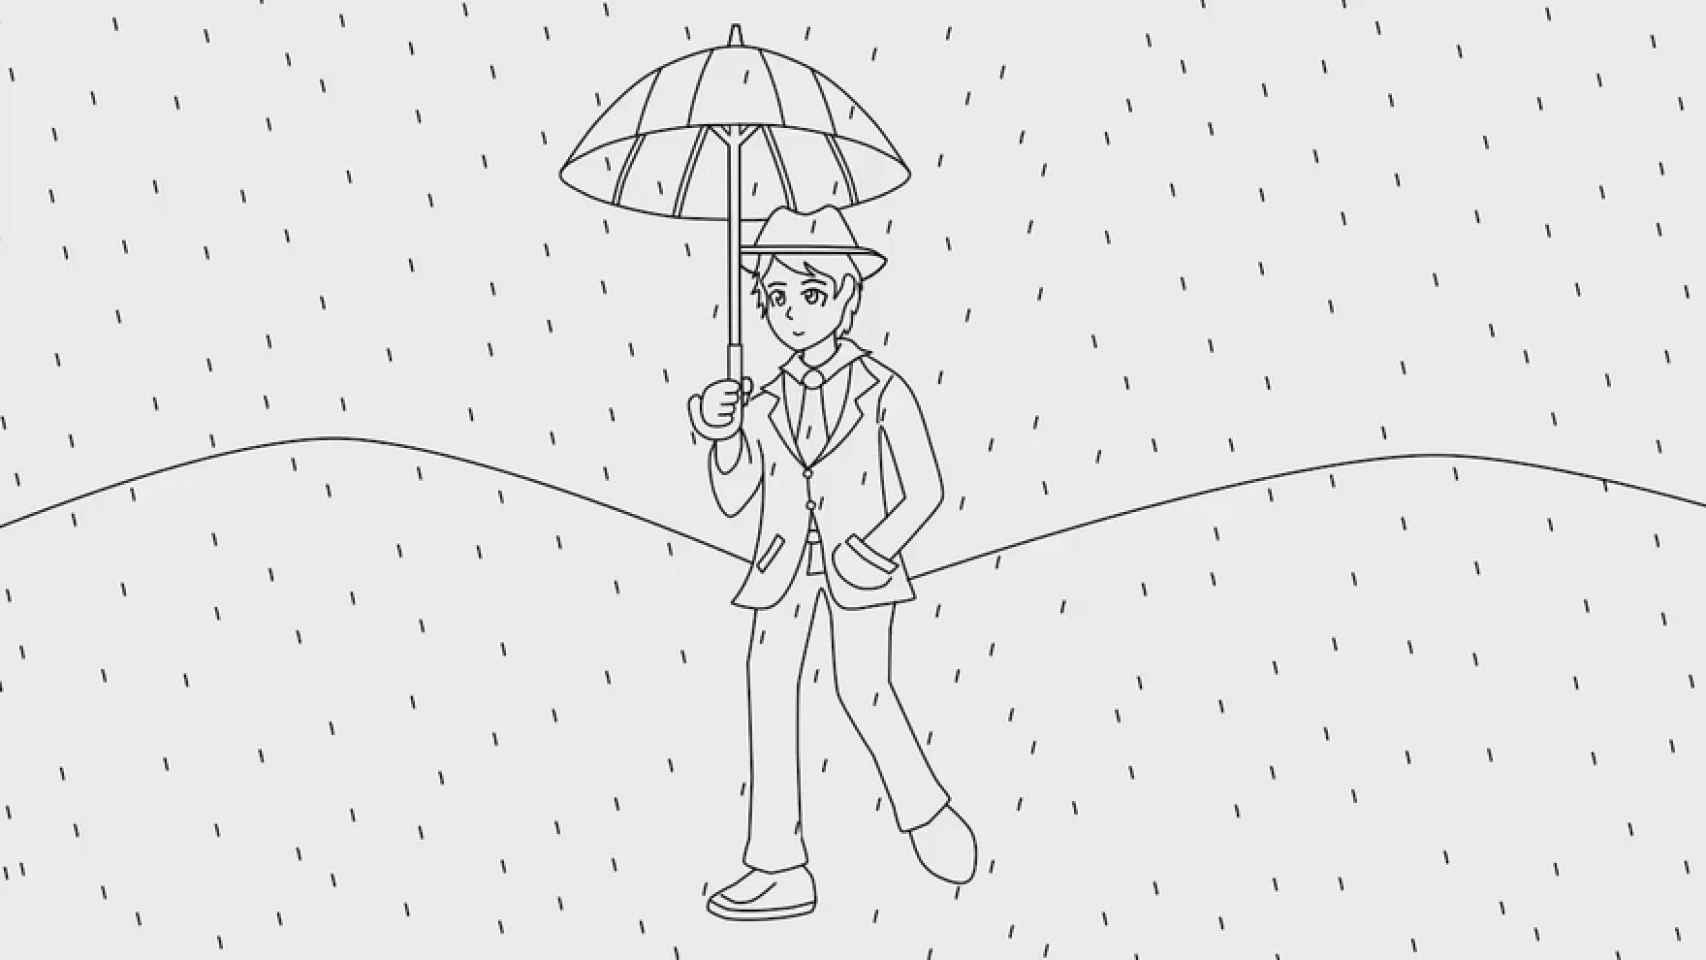 El test para saber cómo respondes al estrés: dibuja una persona bajo la  lluvia y te diré cómo eres